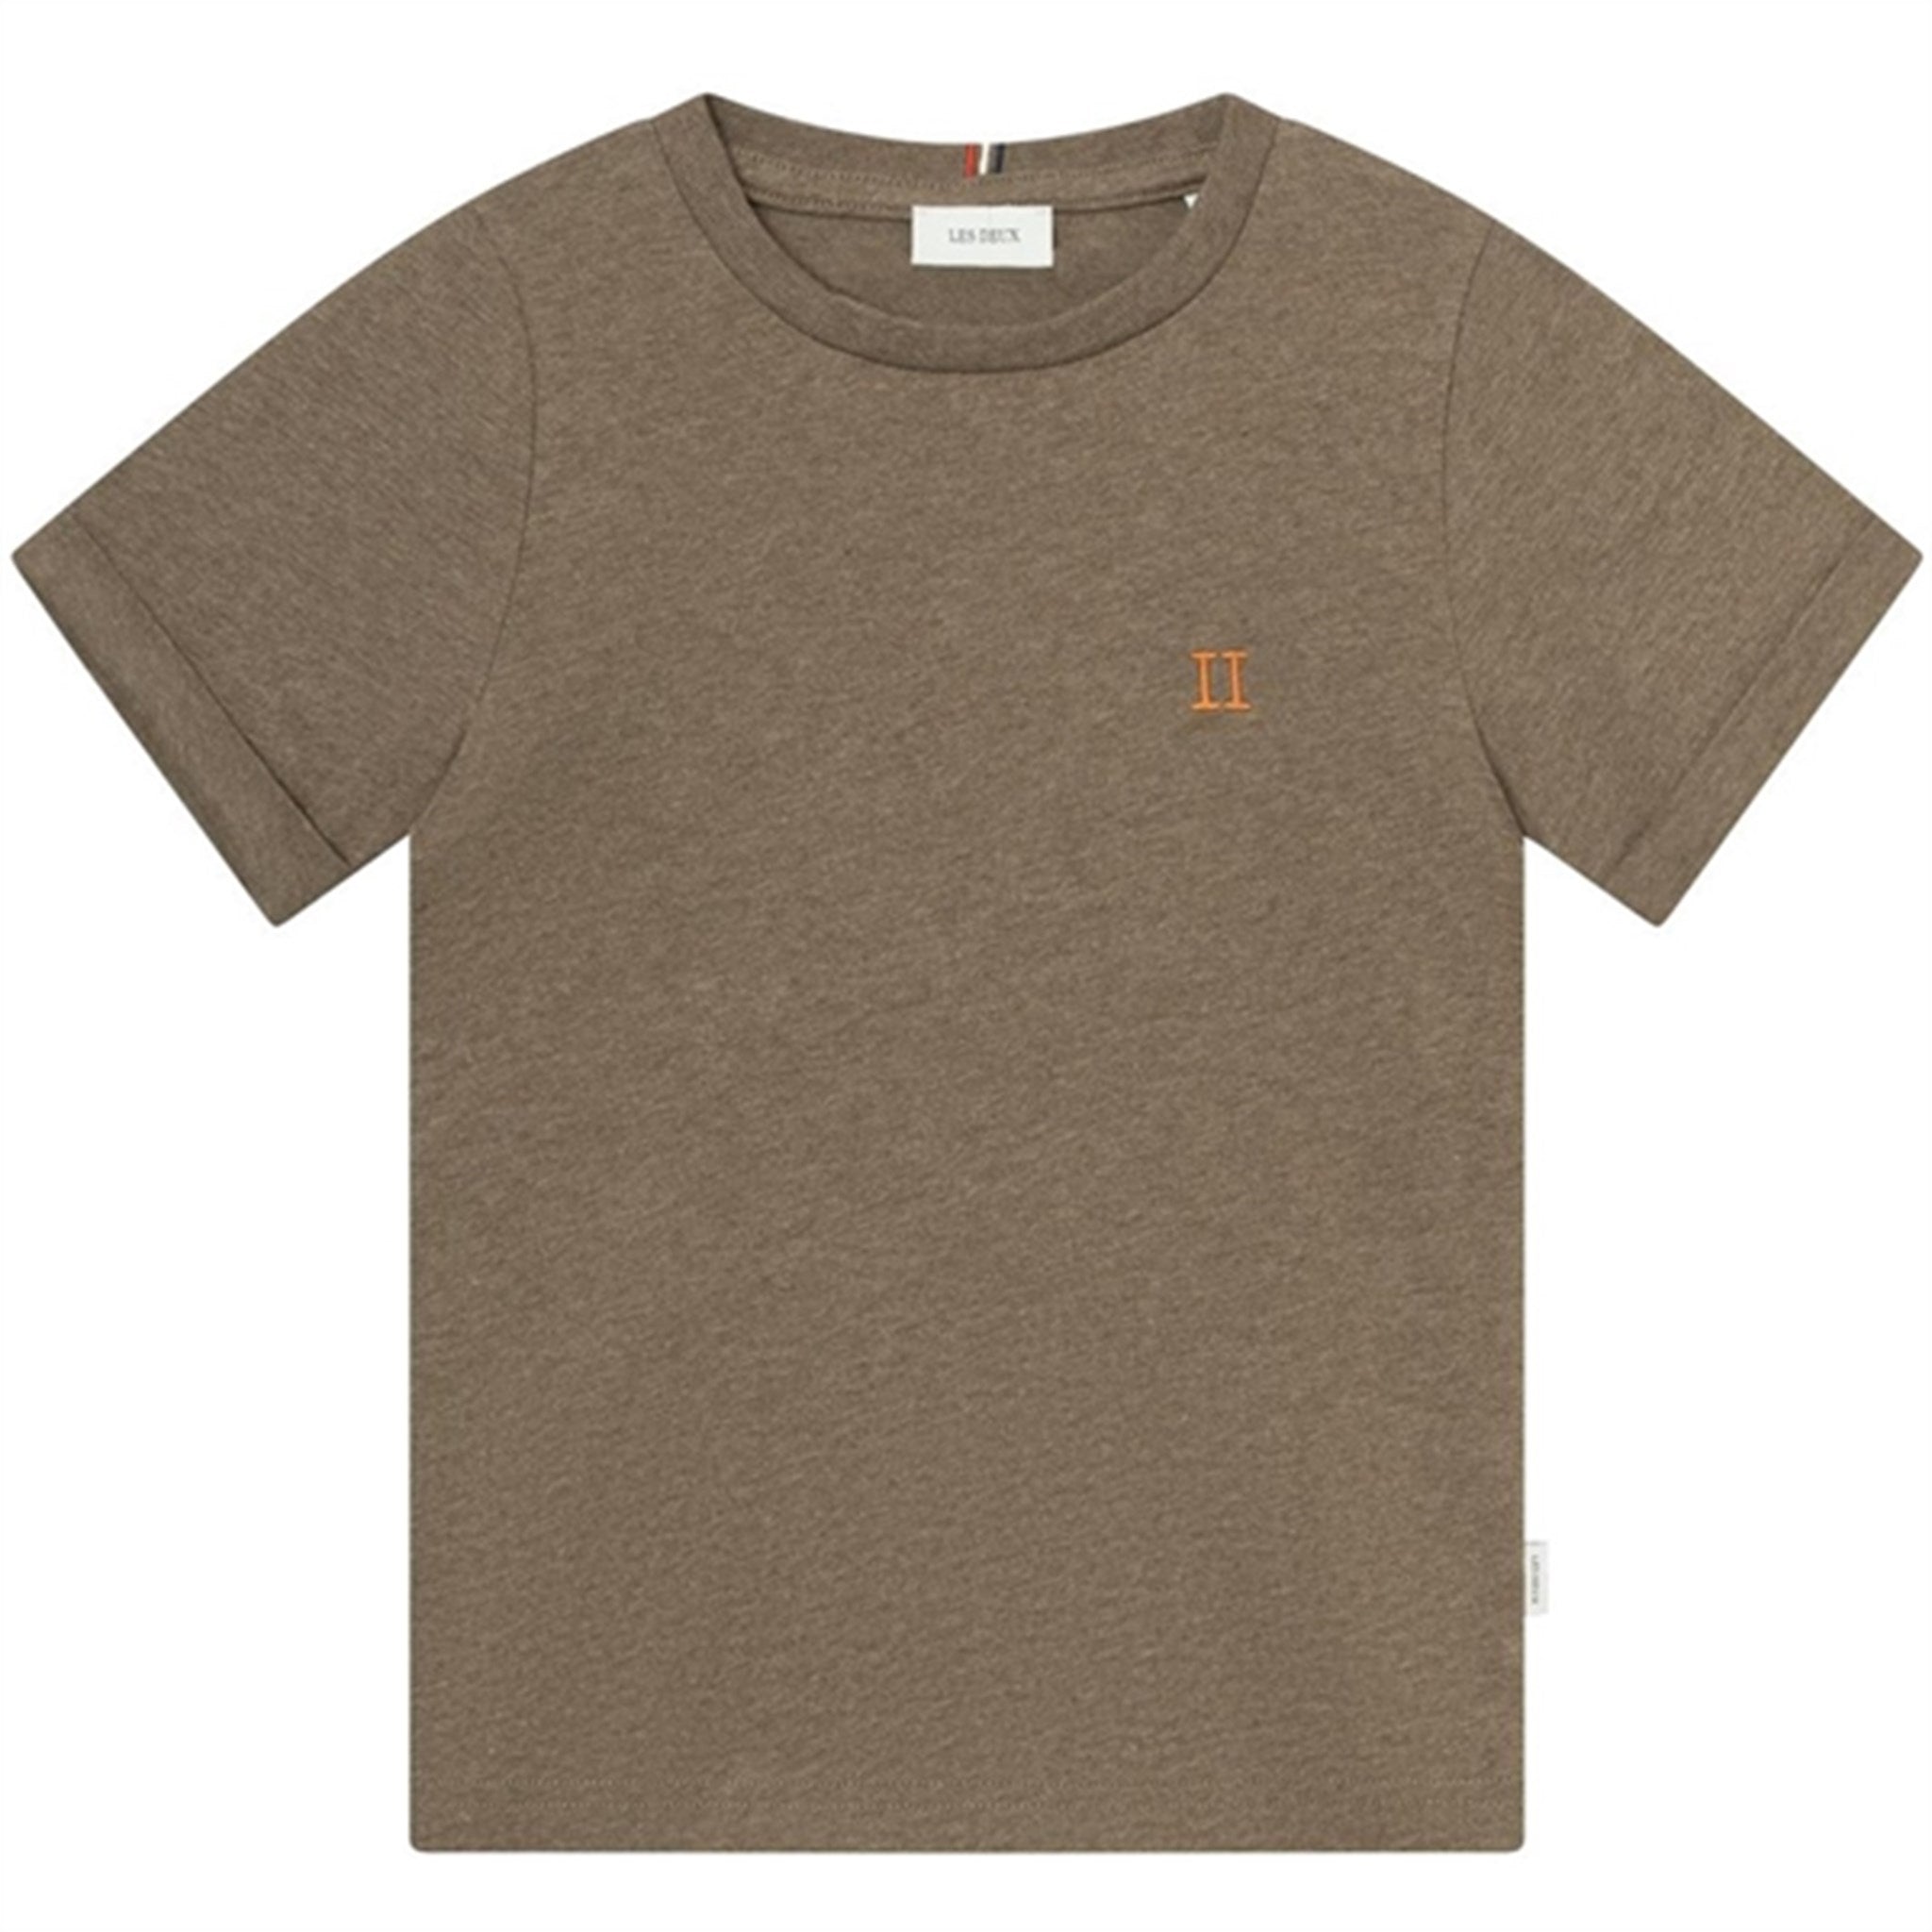 Les Deux Kids Walnut Melange/Orange Nørregaard T-Shirt